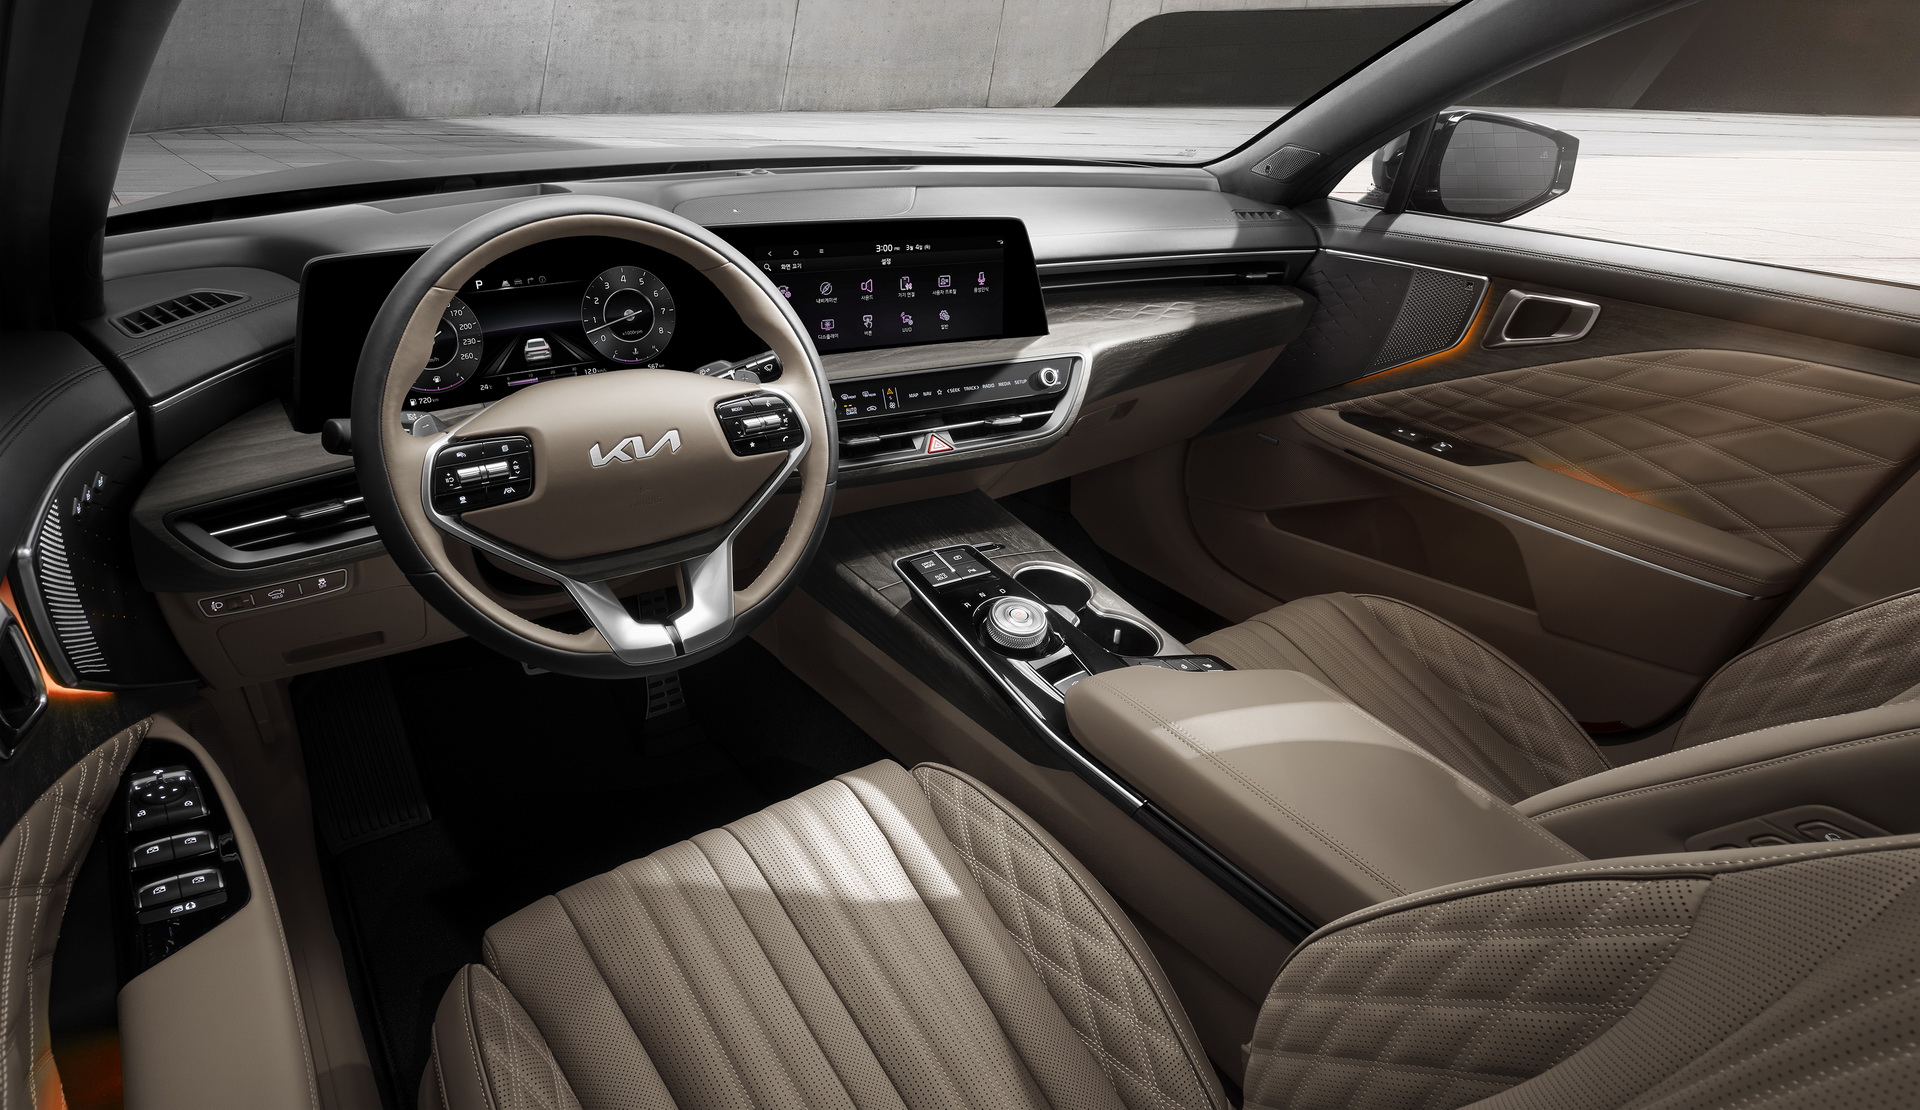 Ngắm nội thất sang chảnh và hiện đại của Kia K8 hoàn toàn mới 2021-kia-k8-official-interior-teaser-1.jpg